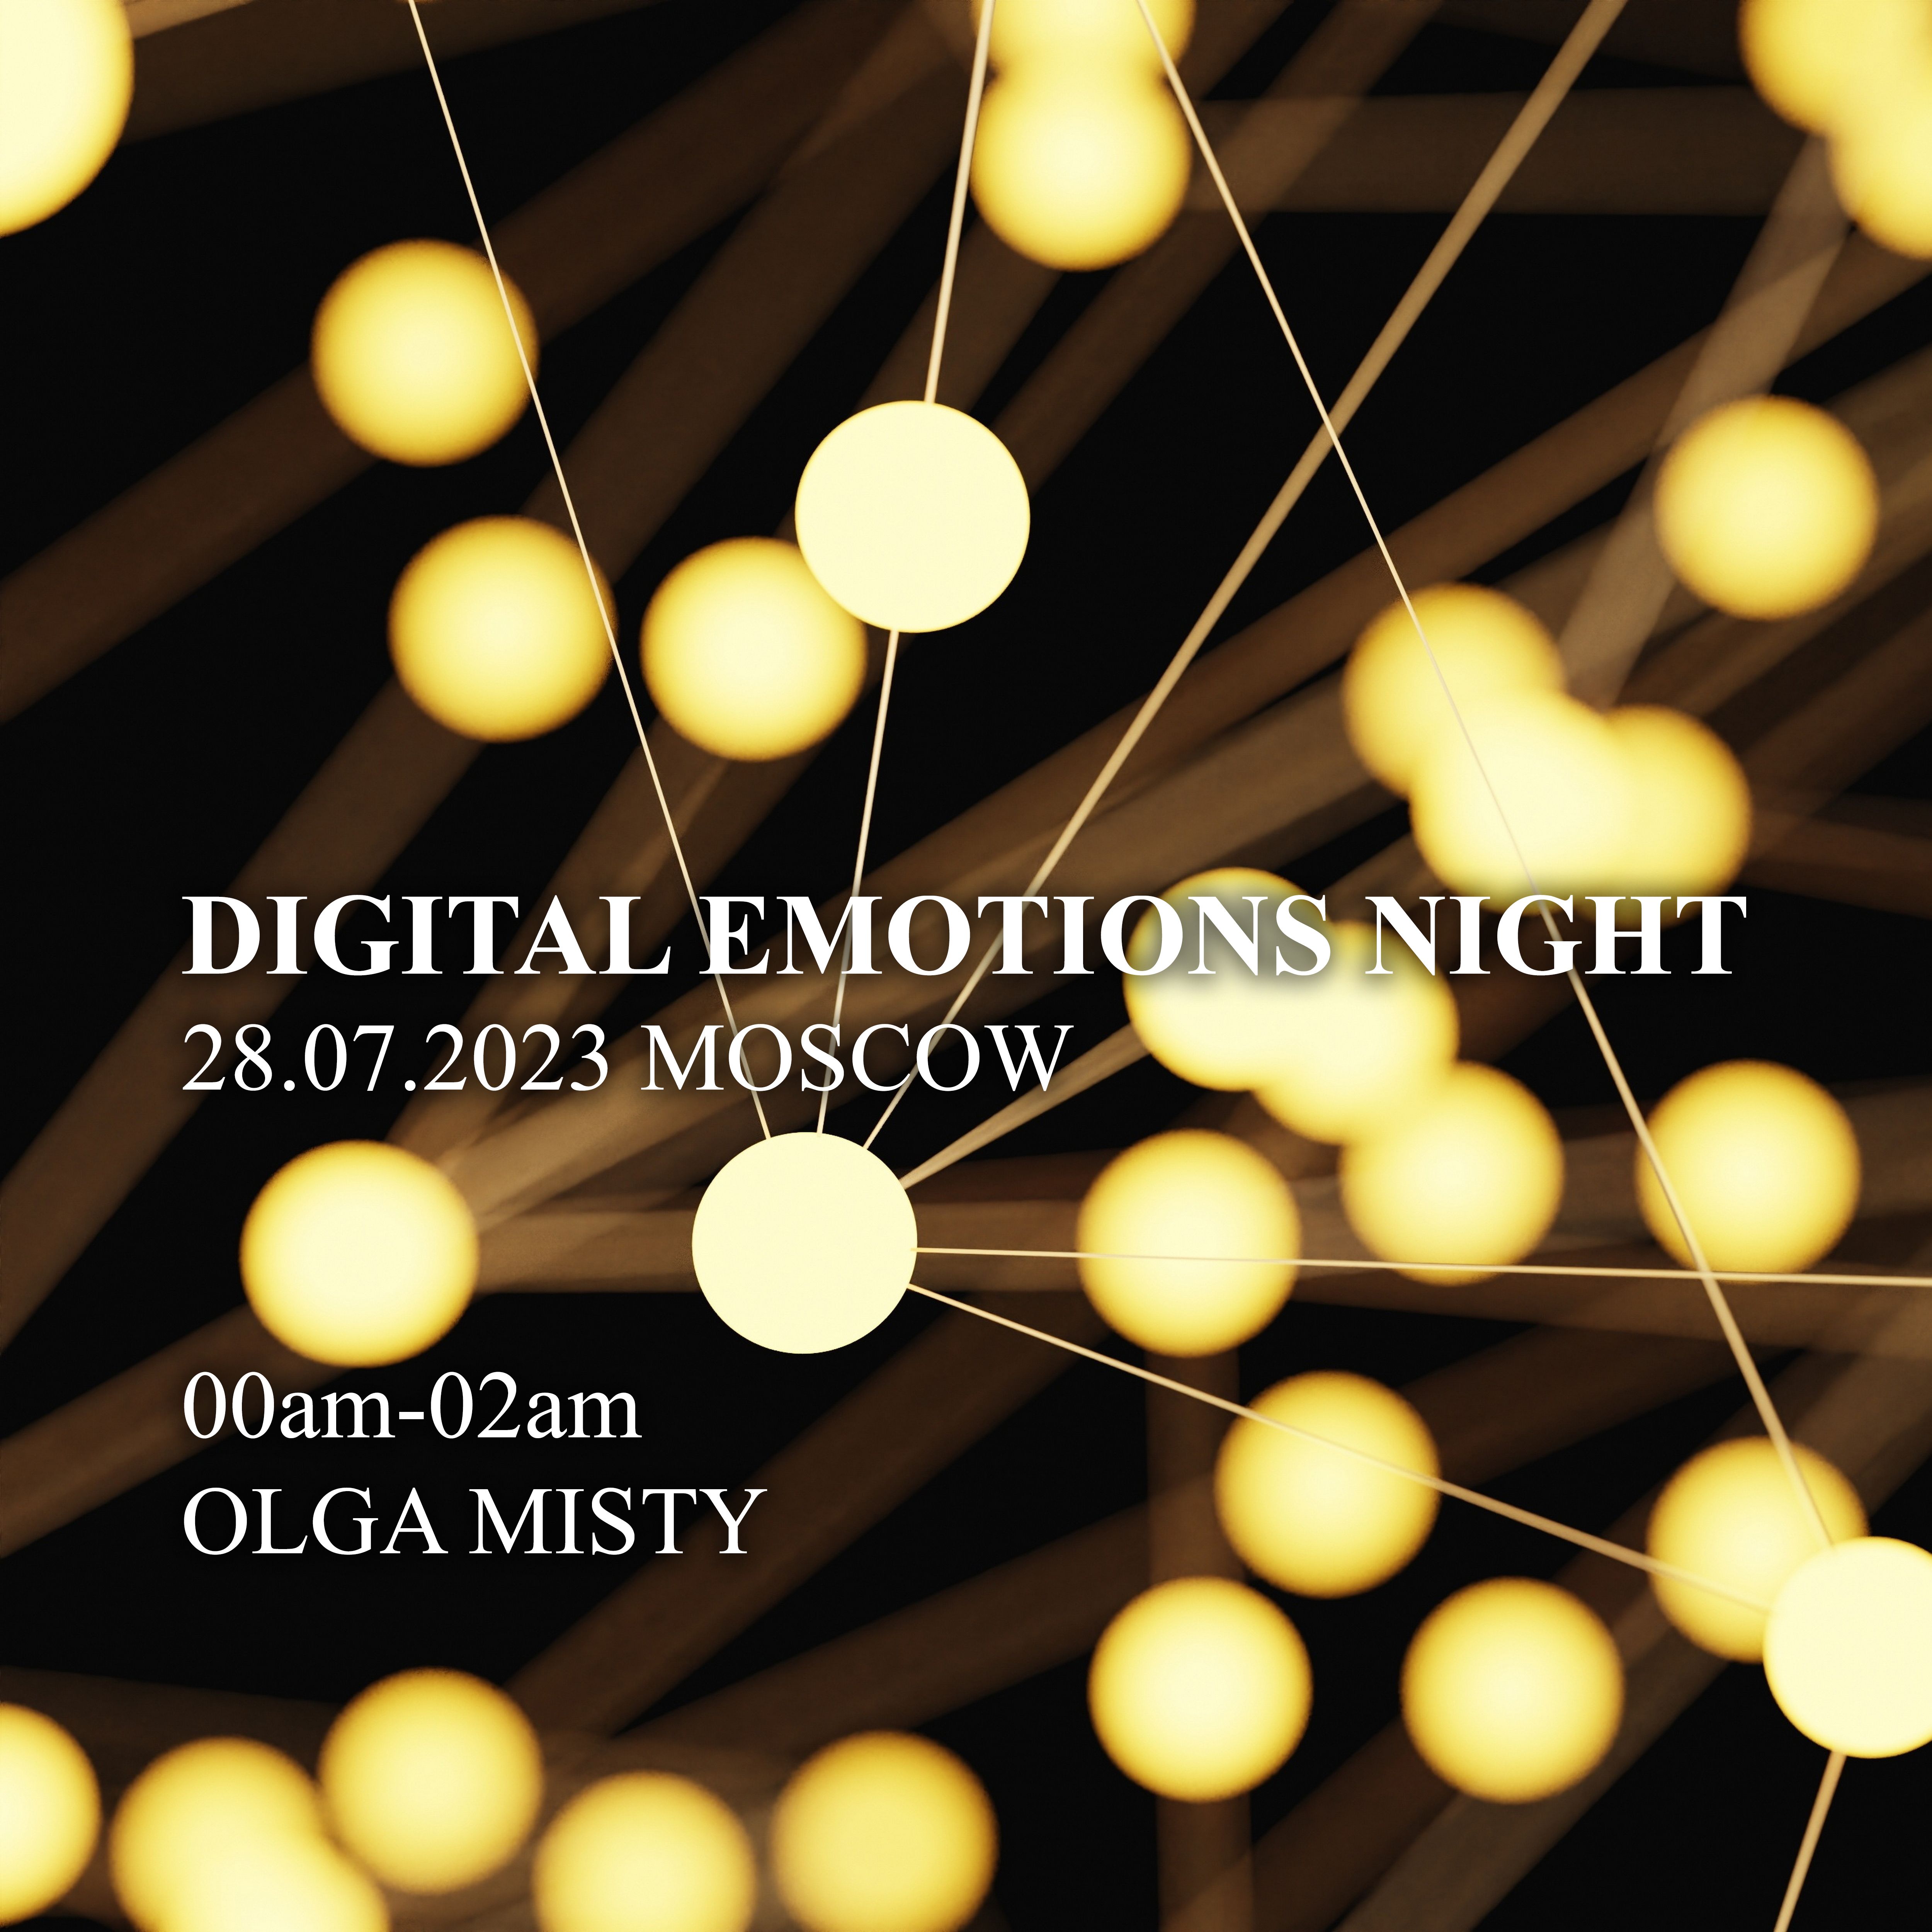 İndirin! Olga Misty - Digital Emotions Night (28 July 2023) Ketch Up, Moscow